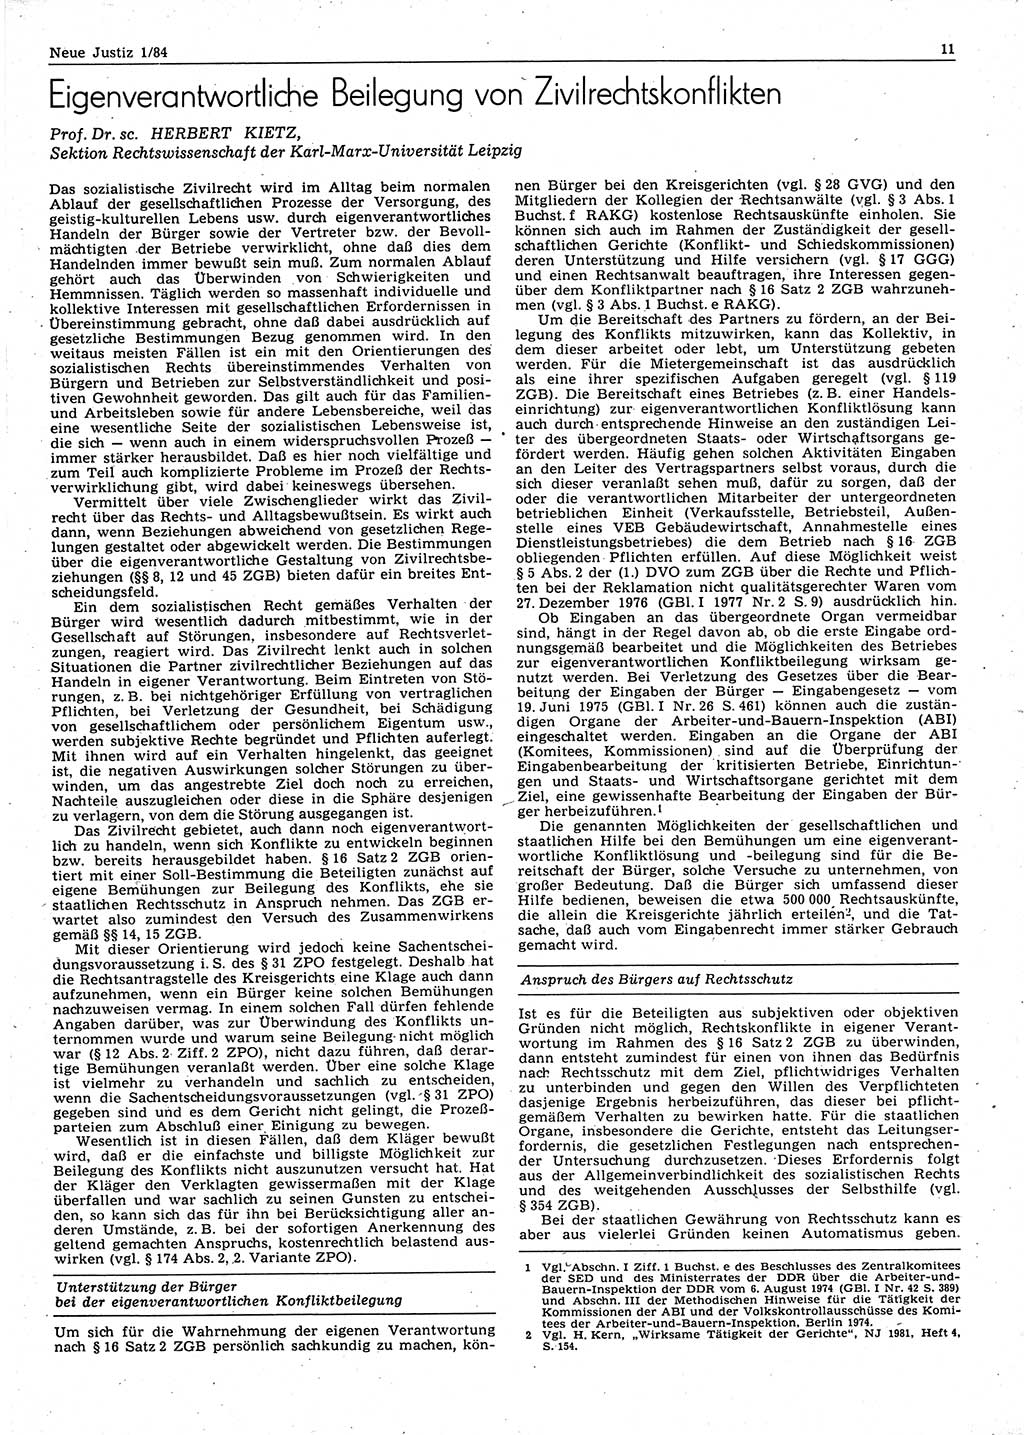 Neue Justiz (NJ), Zeitschrift für sozialistisches Recht und Gesetzlichkeit [Deutsche Demokratische Republik (DDR)], 38. Jahrgang 1984, Seite 11 (NJ DDR 1984, S. 11)